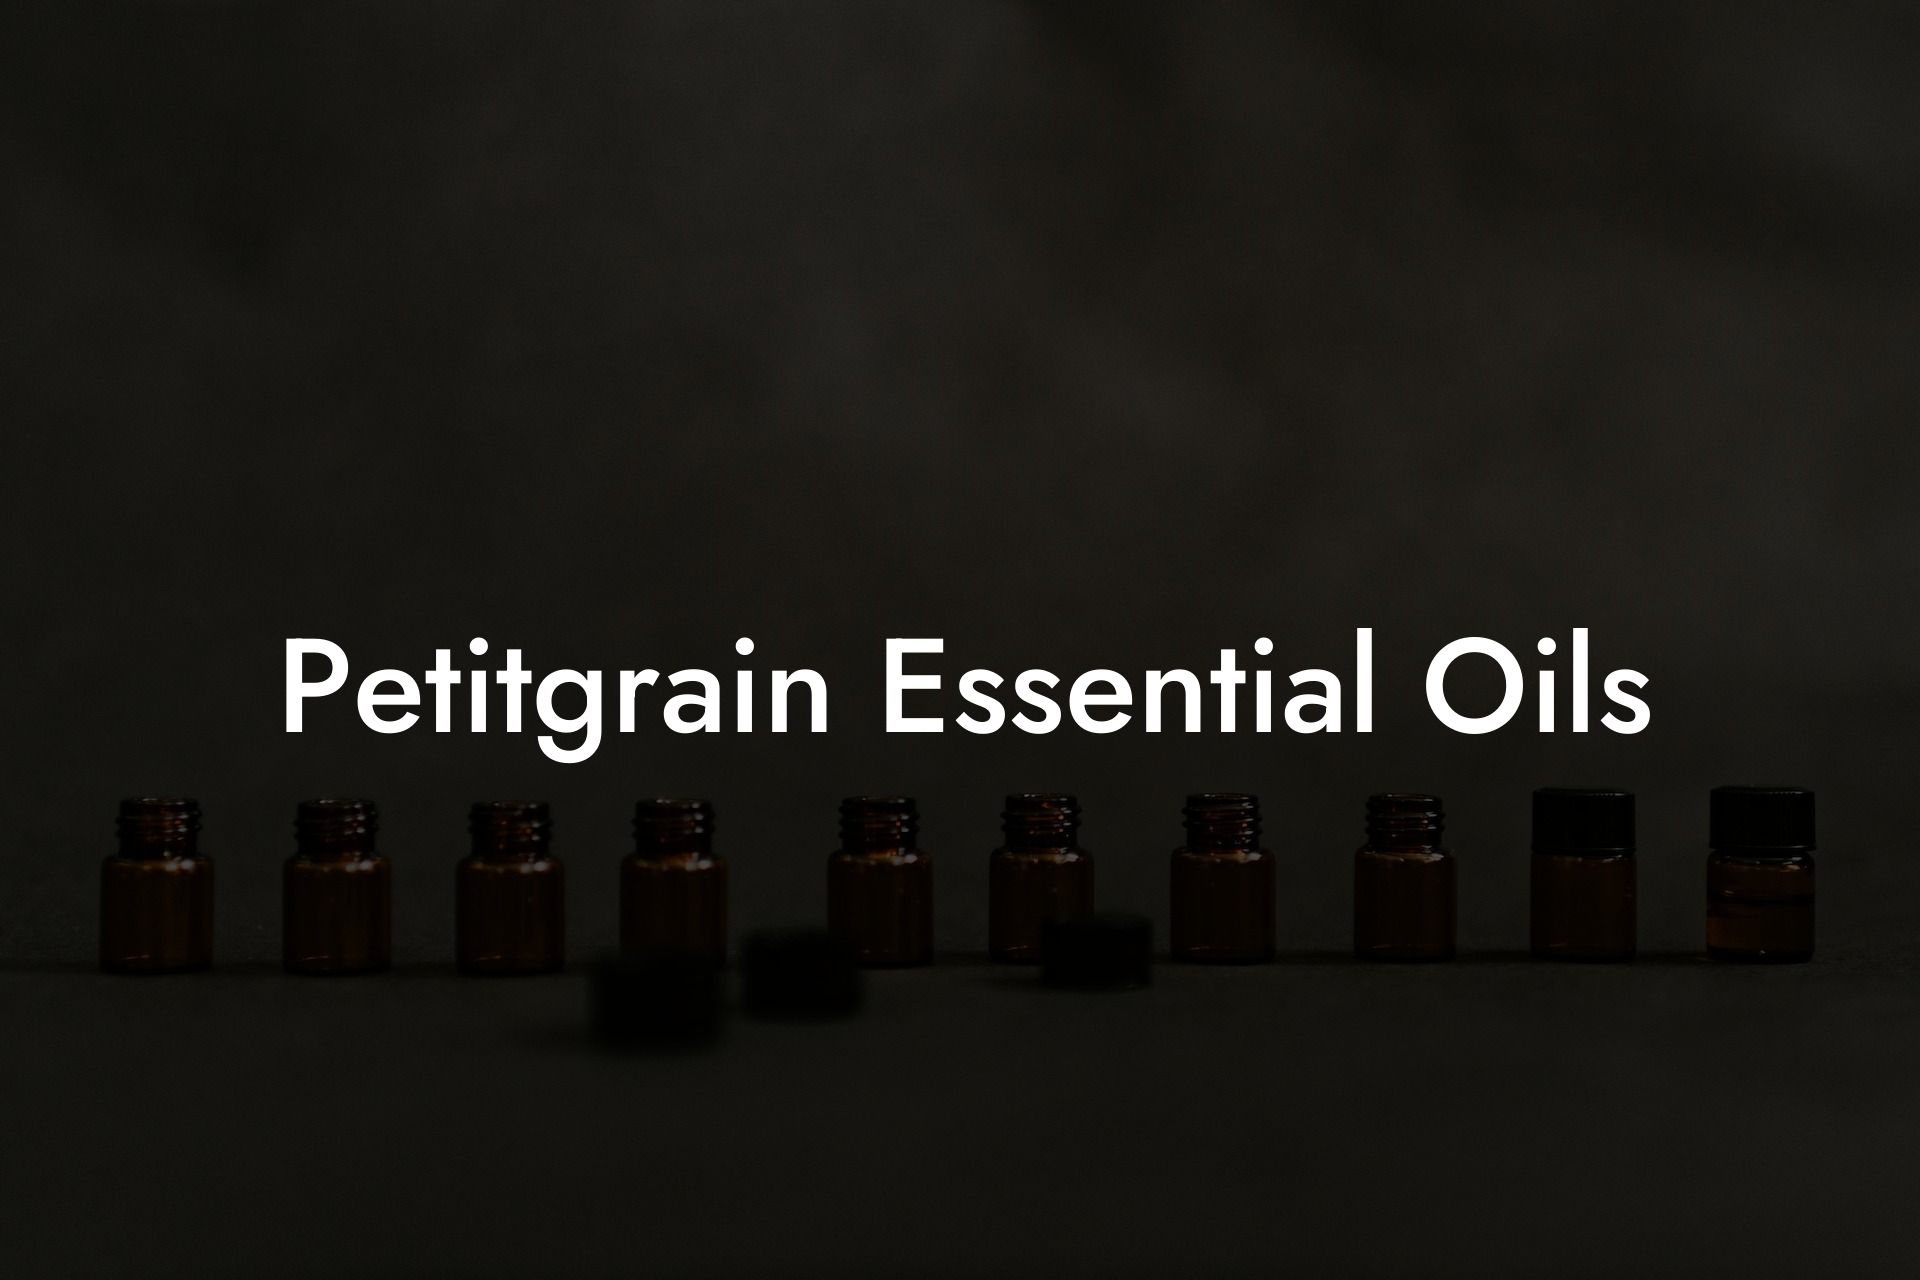 Petitgrain Essential Oils